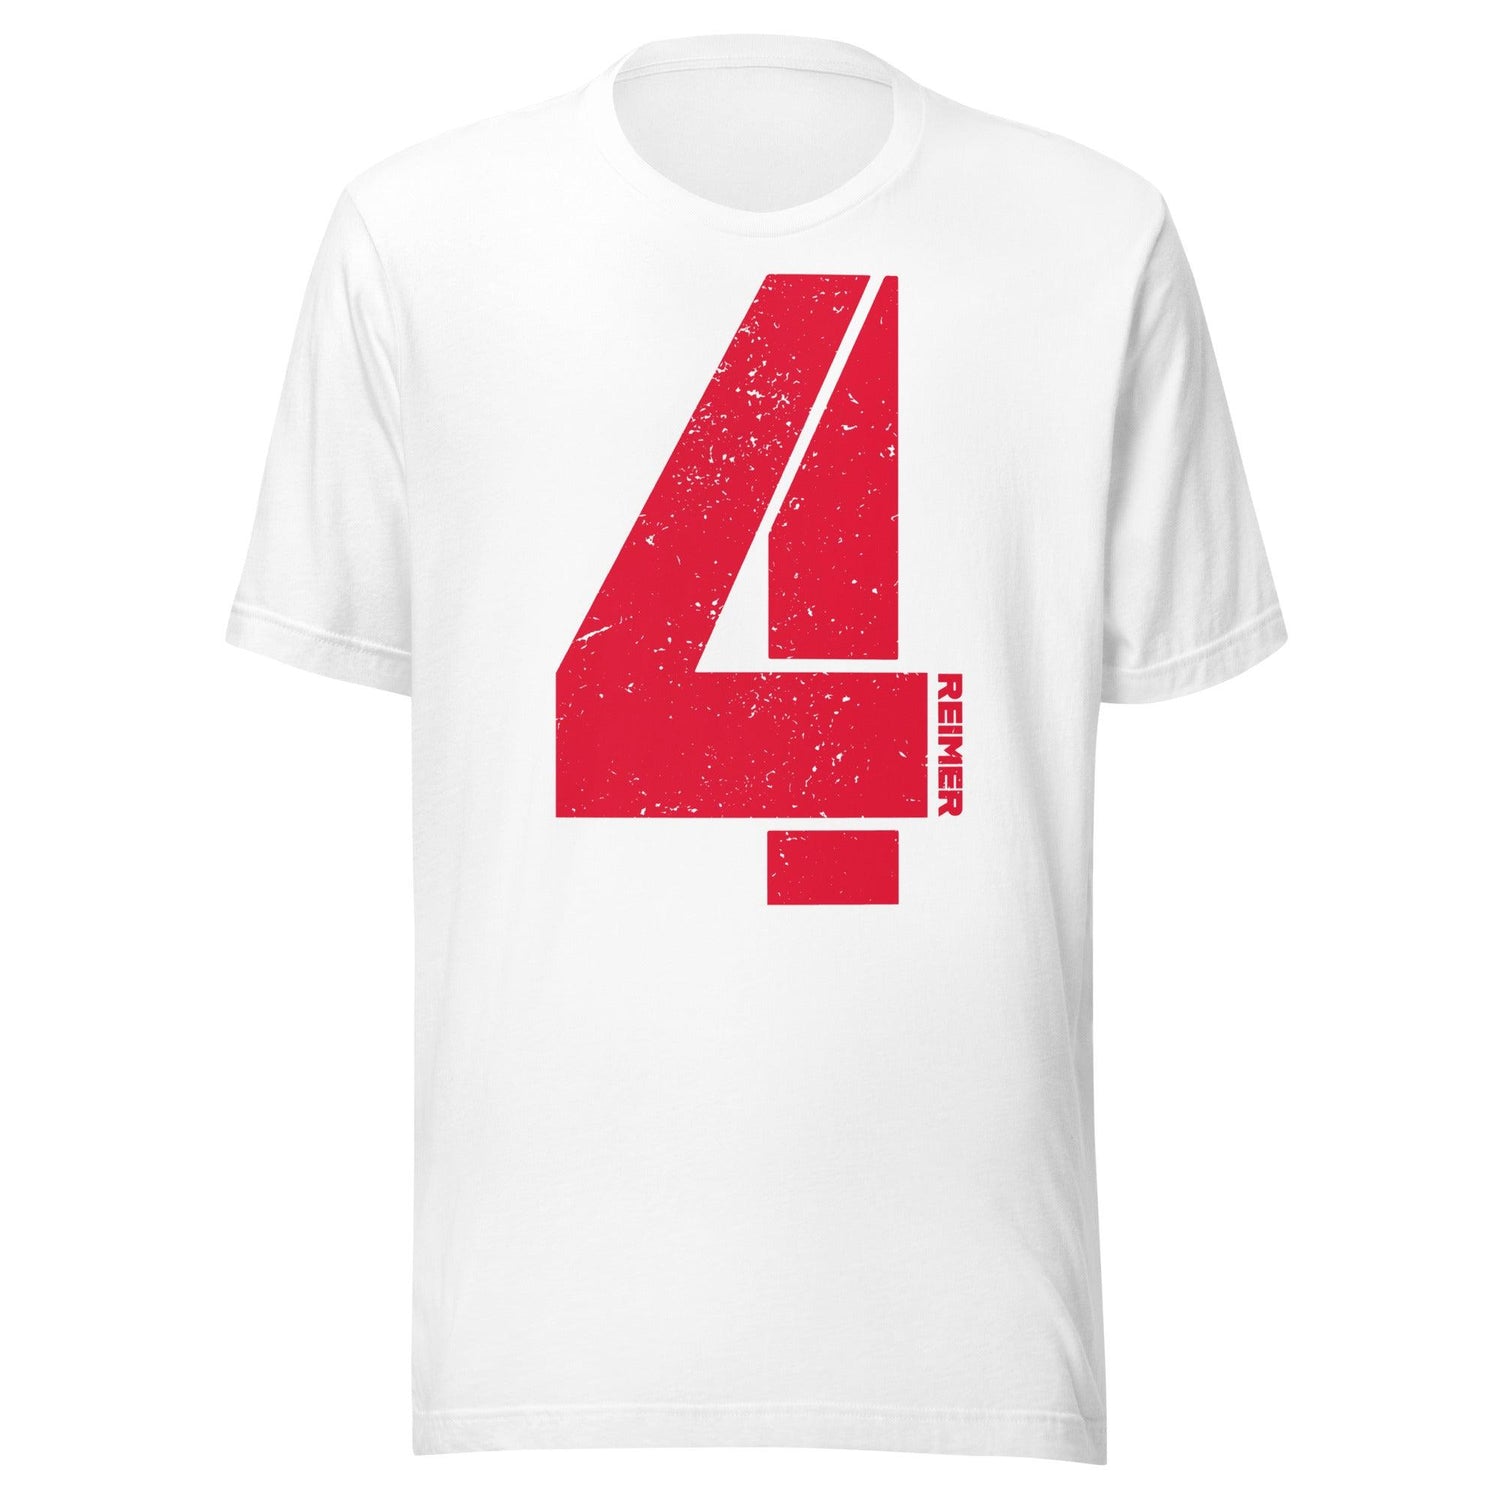 Luke Reimer "4" t-shirt - Fan Arch